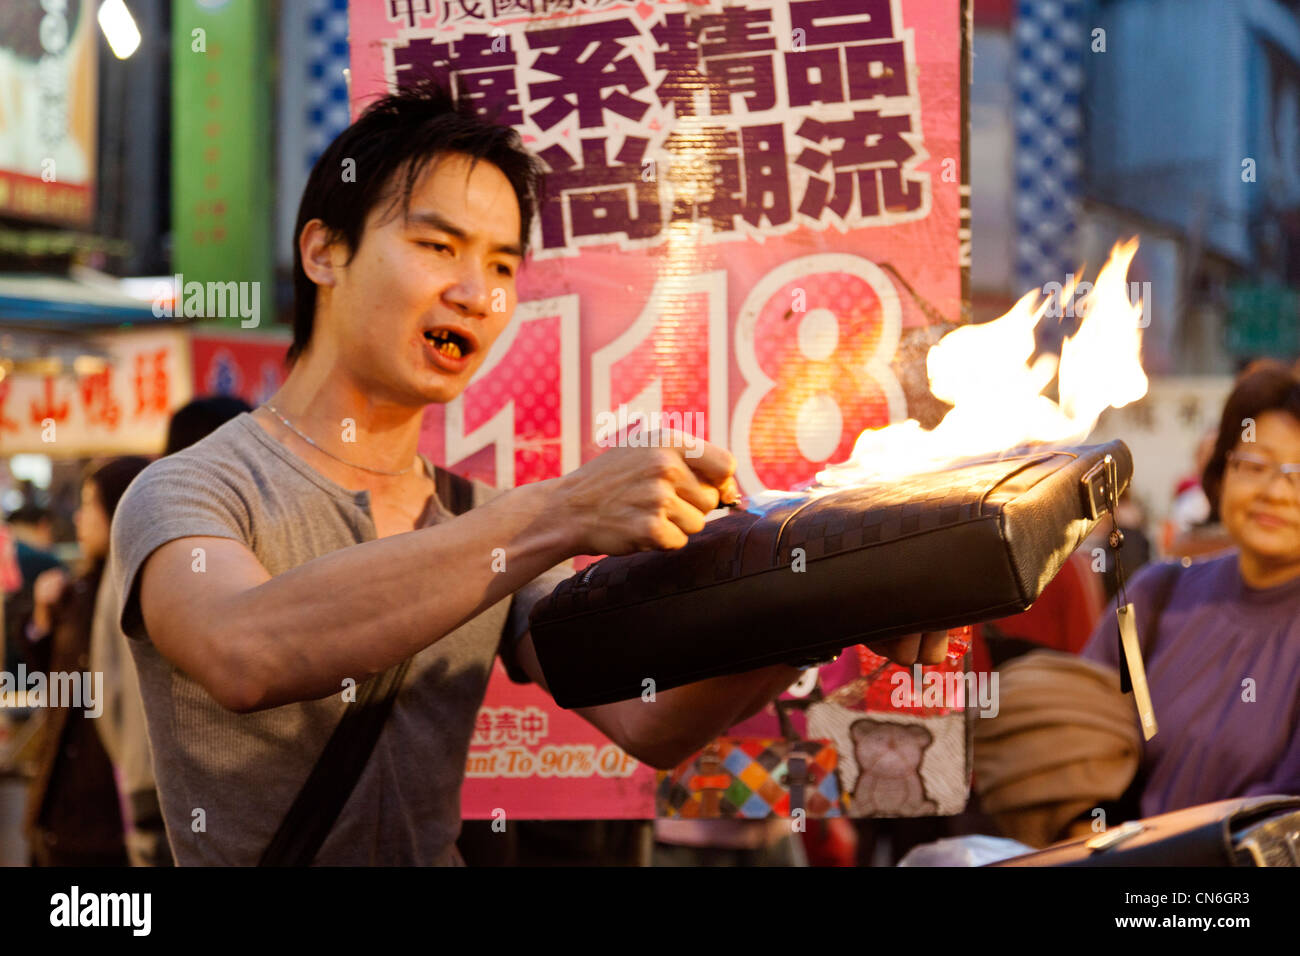 Man shows the fire resistance of a handbag in Keelung (Jilong) Temple Plaza Night Market, Miaokou Yeshi, Keelung Taiwan. JMH5783 Stock Photo